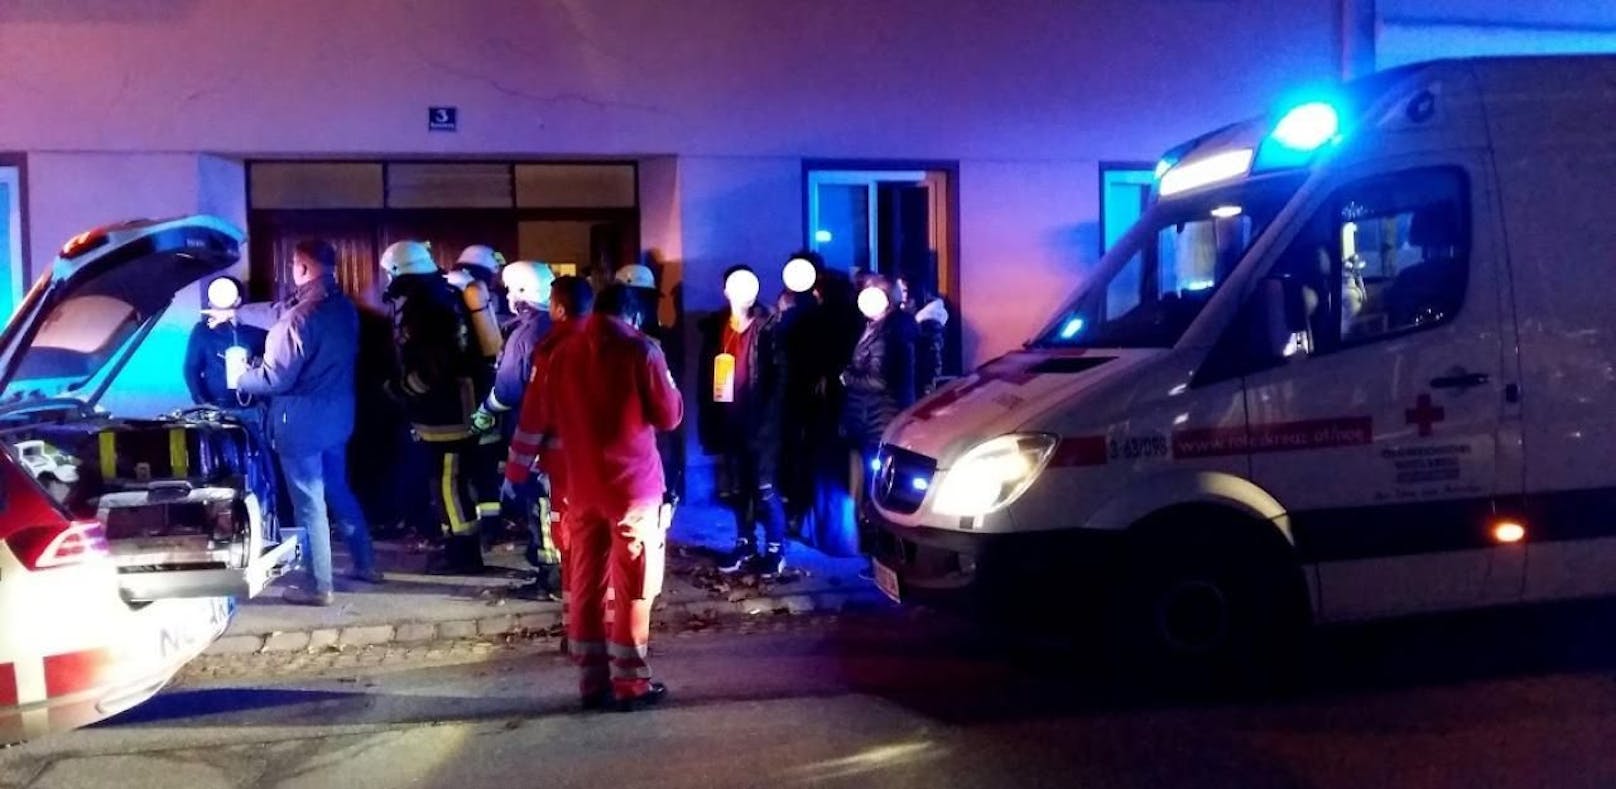 Gas: Wohnhaus evakuiert, 12 Menschen ins Spital